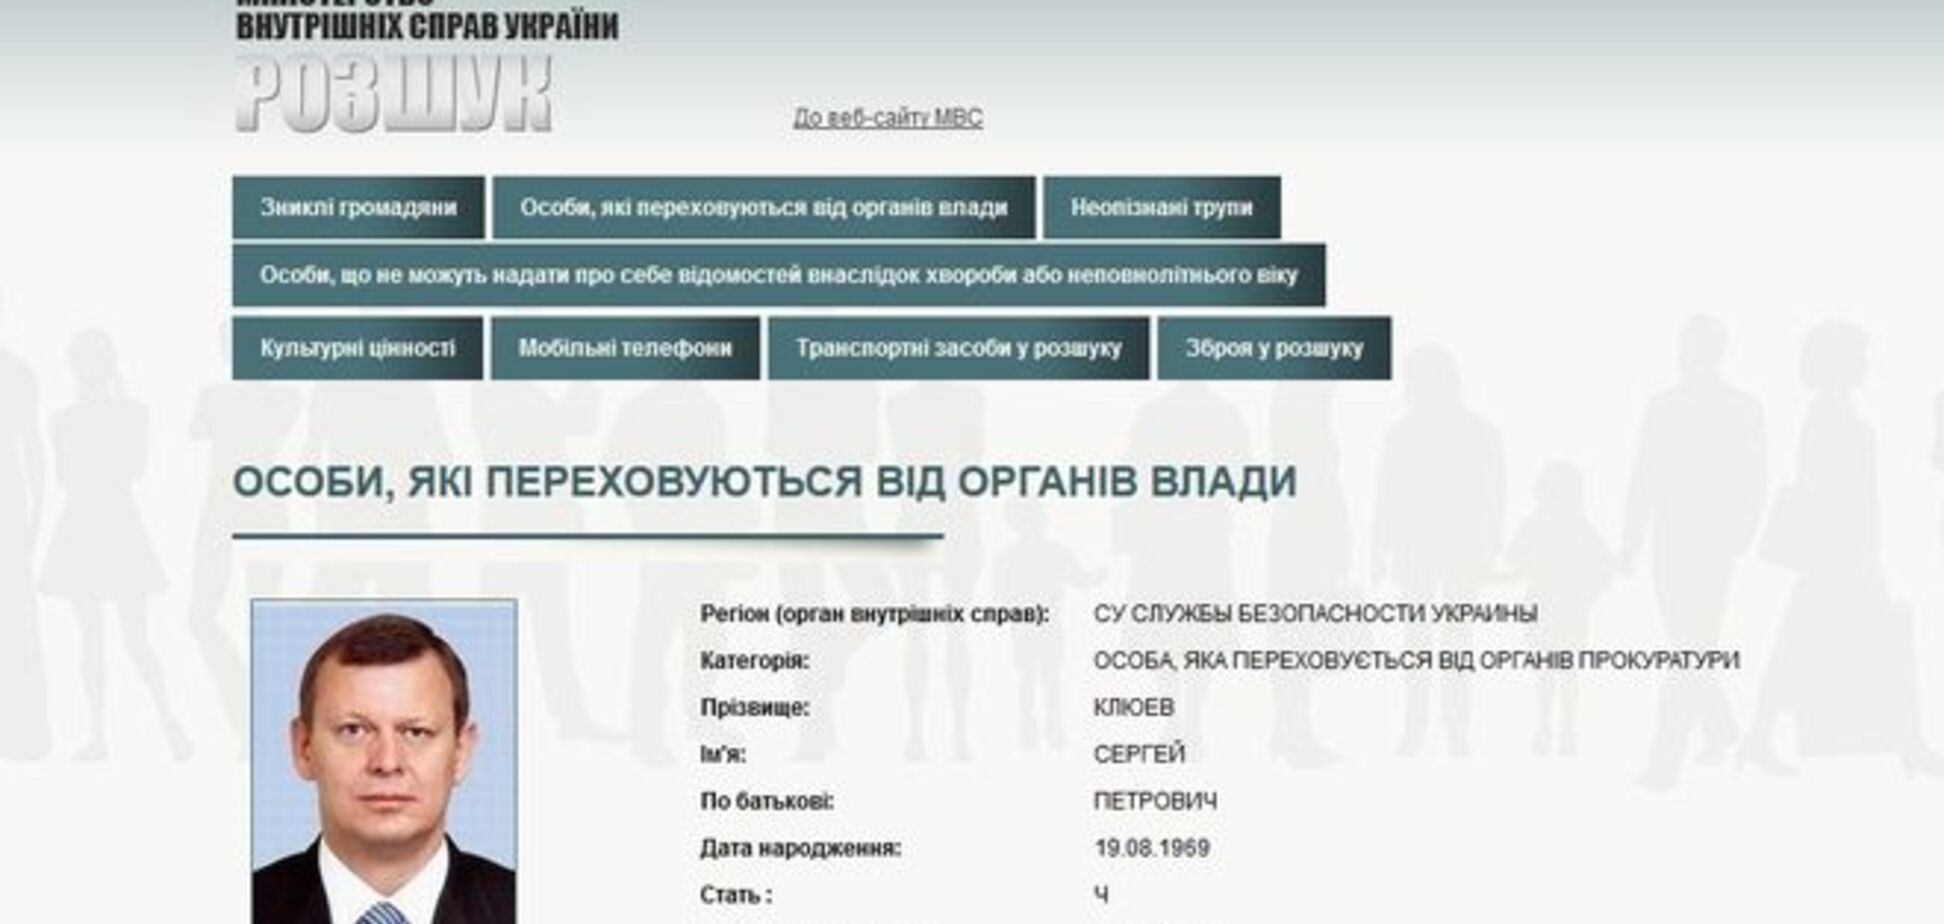 СБУ, объявив в розыск Сергея Клюева, сразу же опровергла этот факт